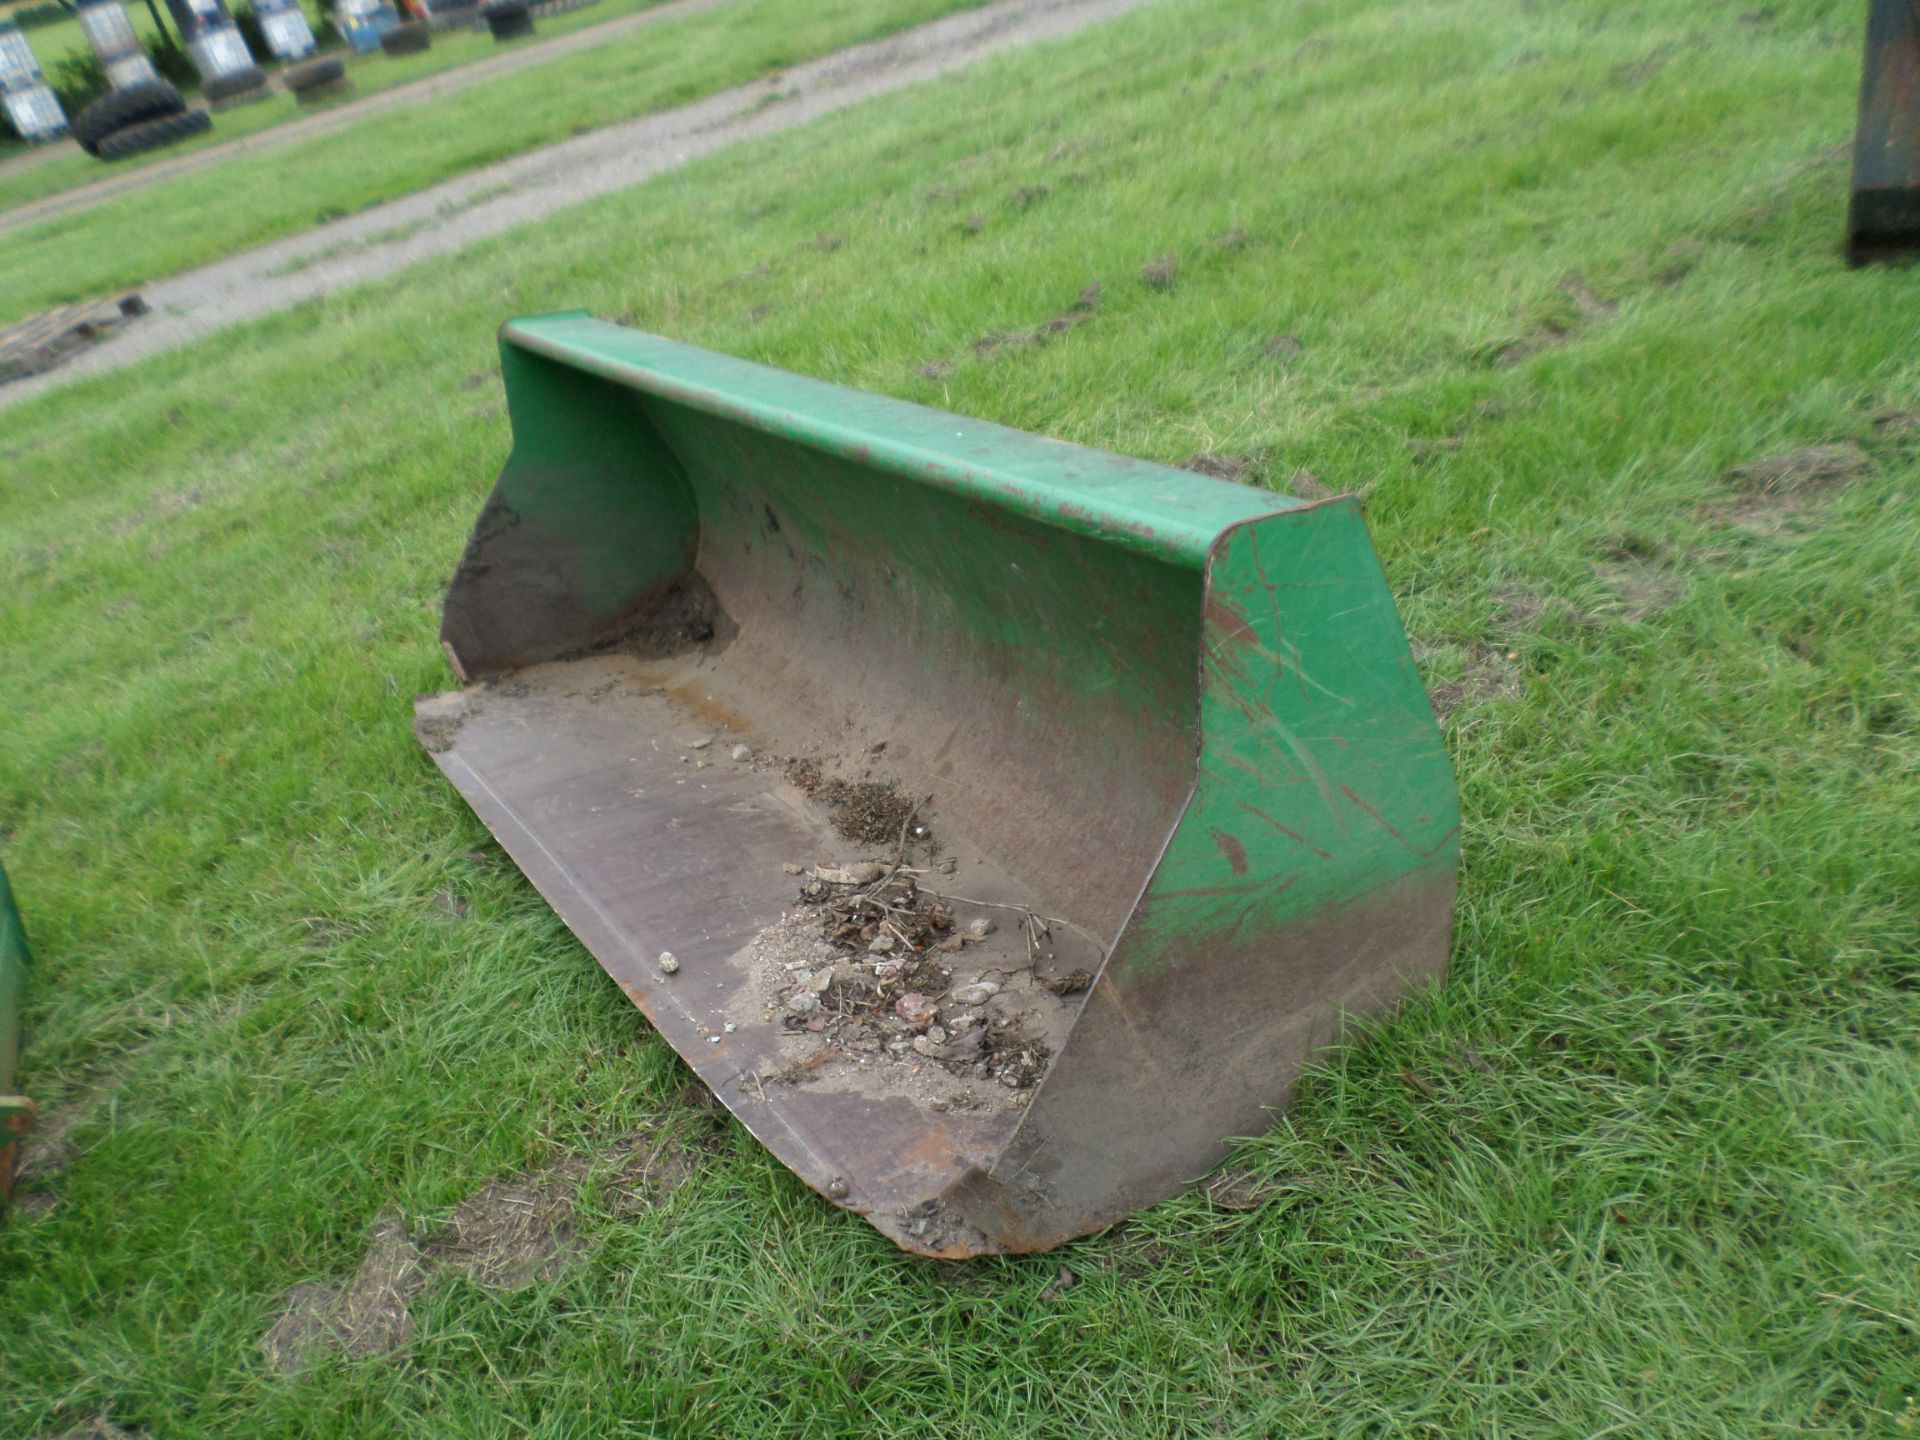 John Deere standard green tractor bucket, fair condition - Image 2 of 2